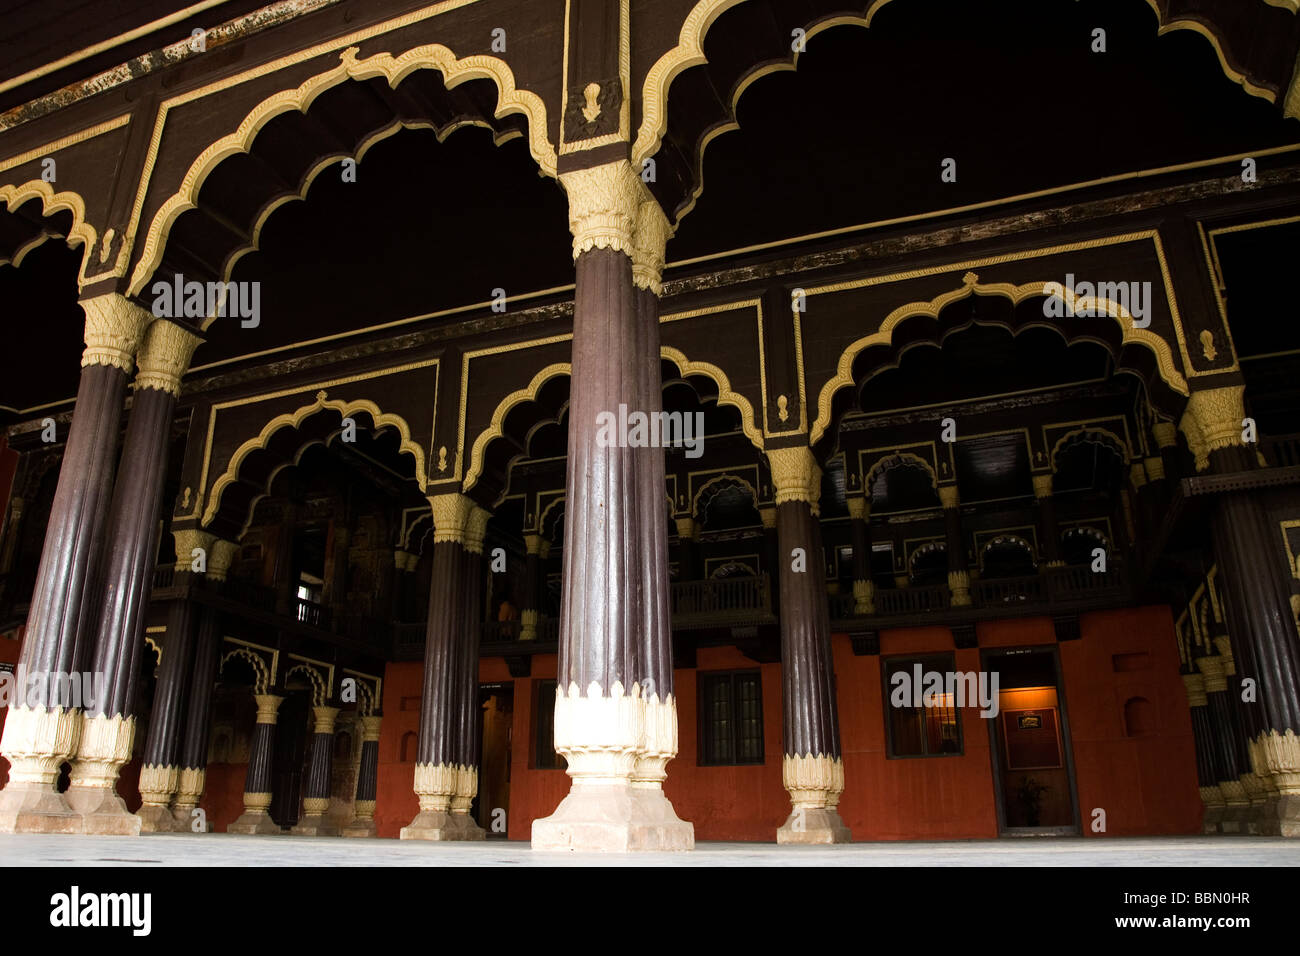 Les arches en bois du palais d'été du Sultan Tipu à Bangalore, Inde. Banque D'Images